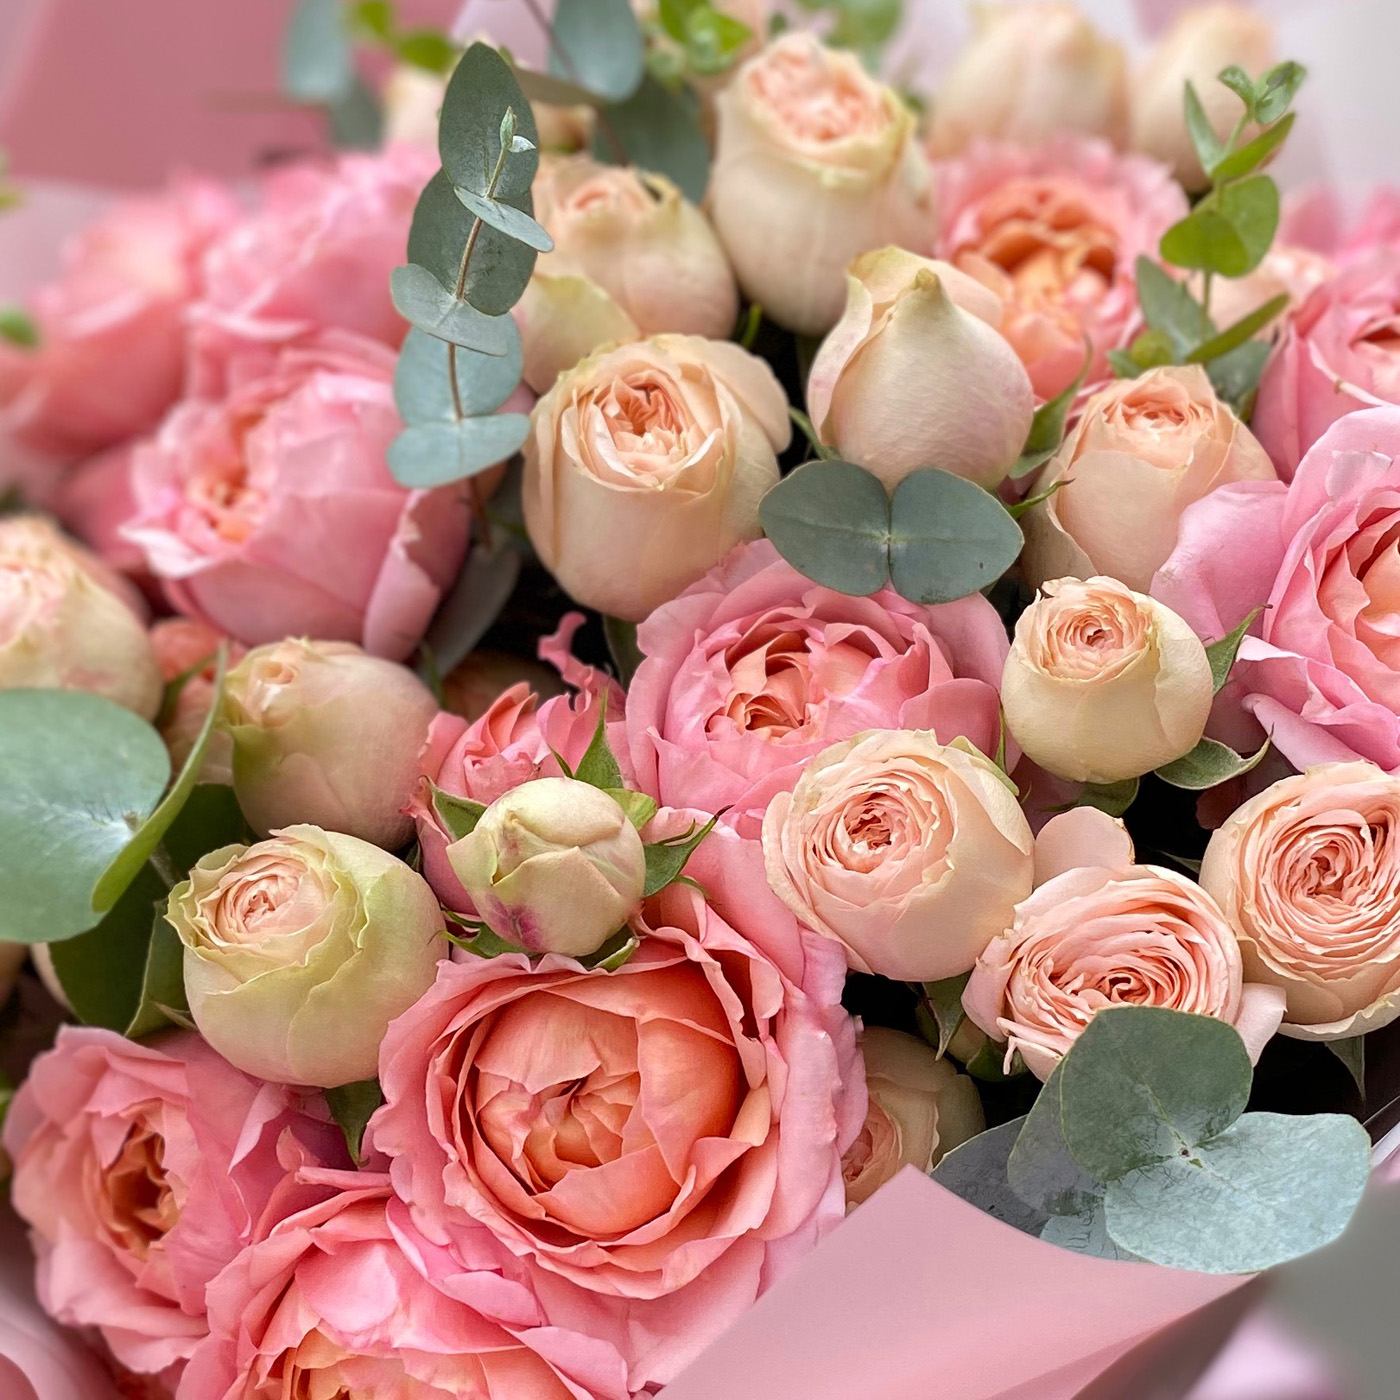 Букет персиково-розовых пионовидных роз